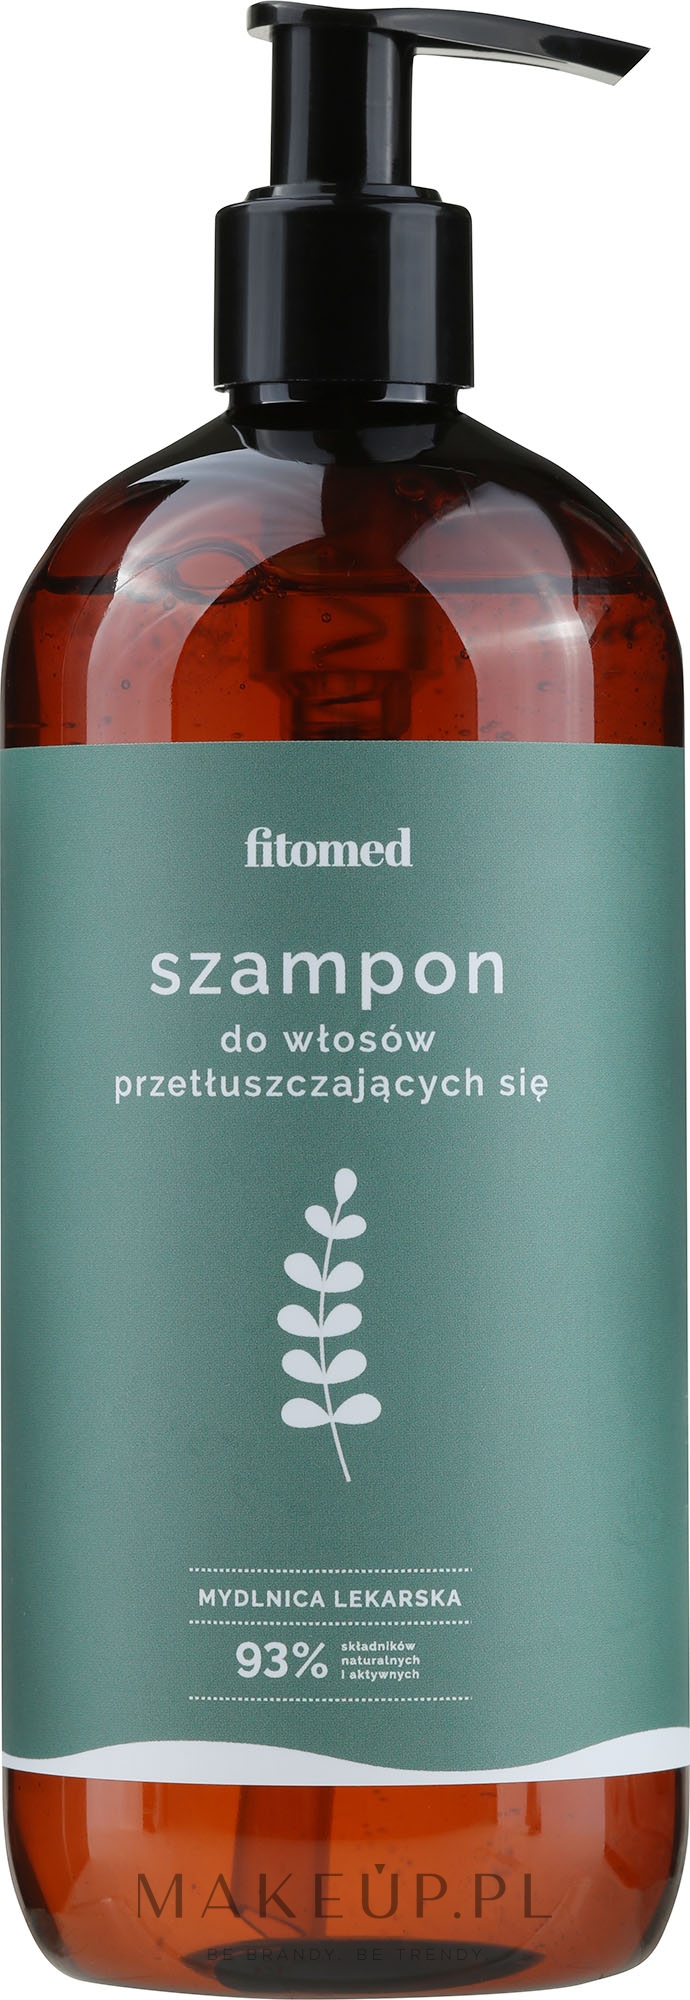 szampon z mydelnicy lekarskiej ziołowa wyspa